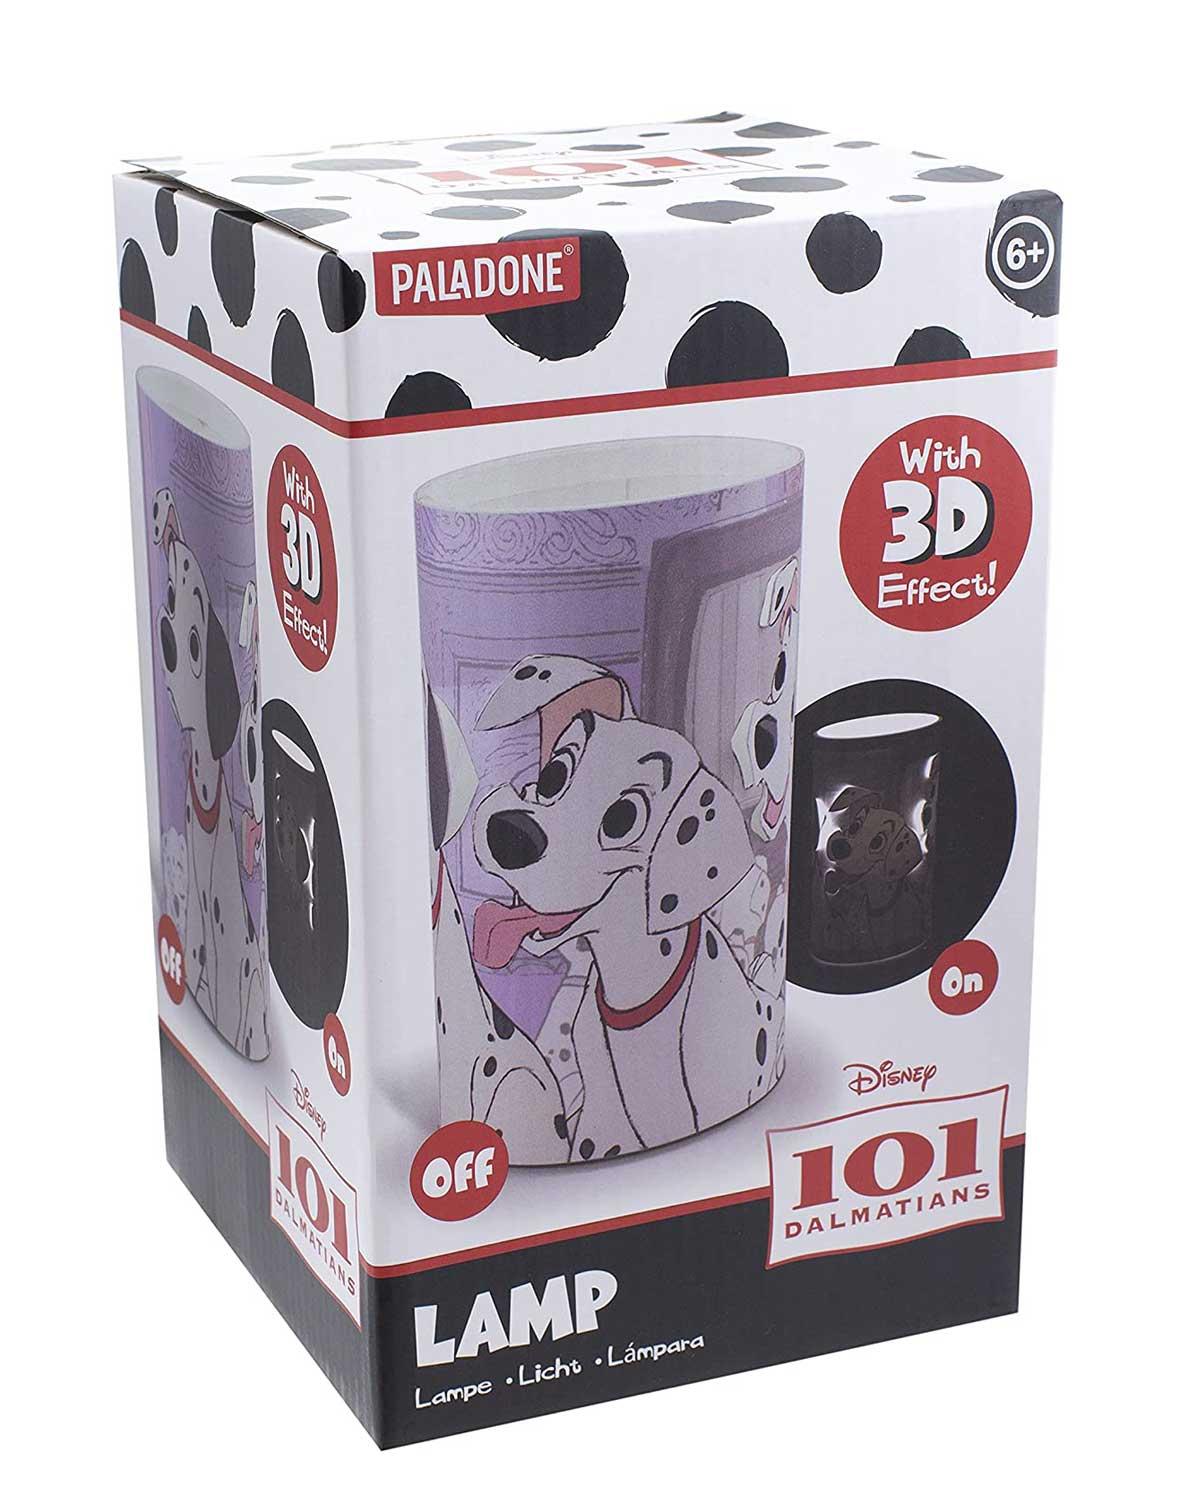 Selected image for PALADONE PRODUCTS Lampa Disney 101 Dalmatians sa 3D efektom